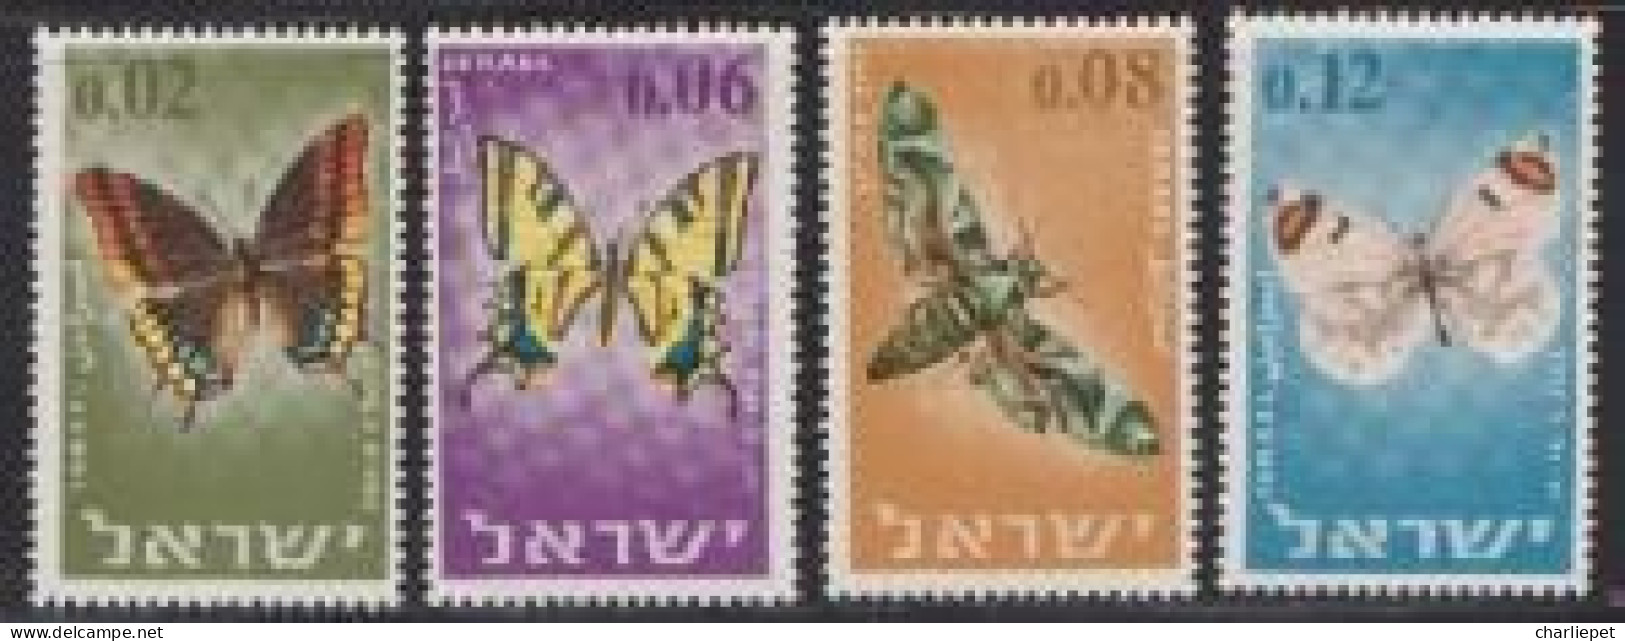 Israel Scott #  304-307  MNH VF Butterflies - Ungebraucht (ohne Tabs)